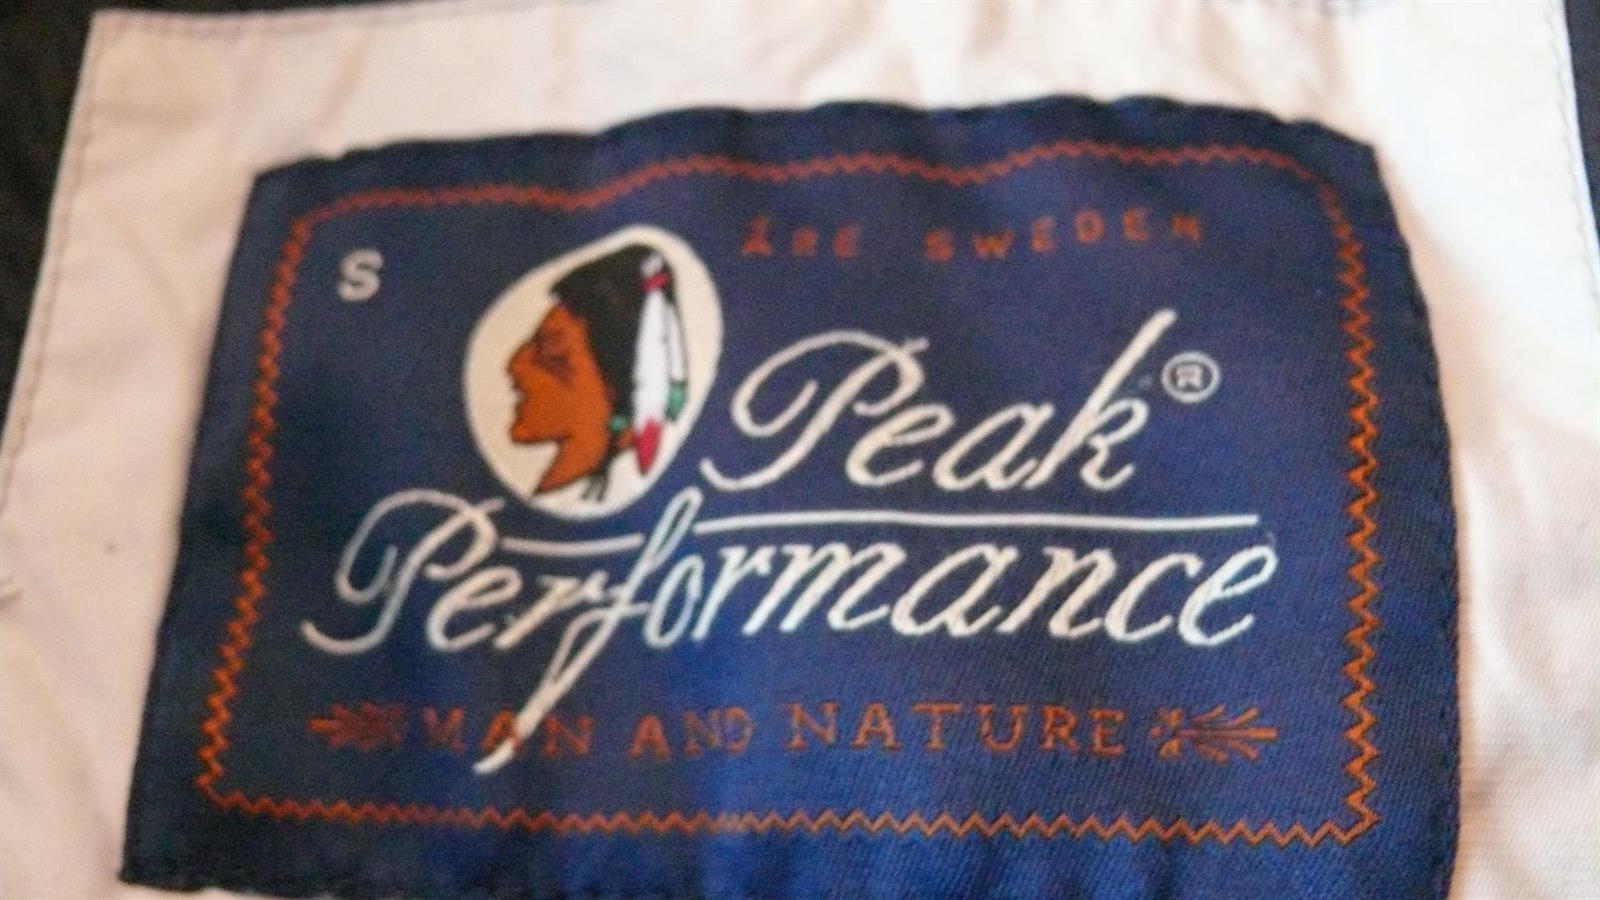 Peak Performance vintersport